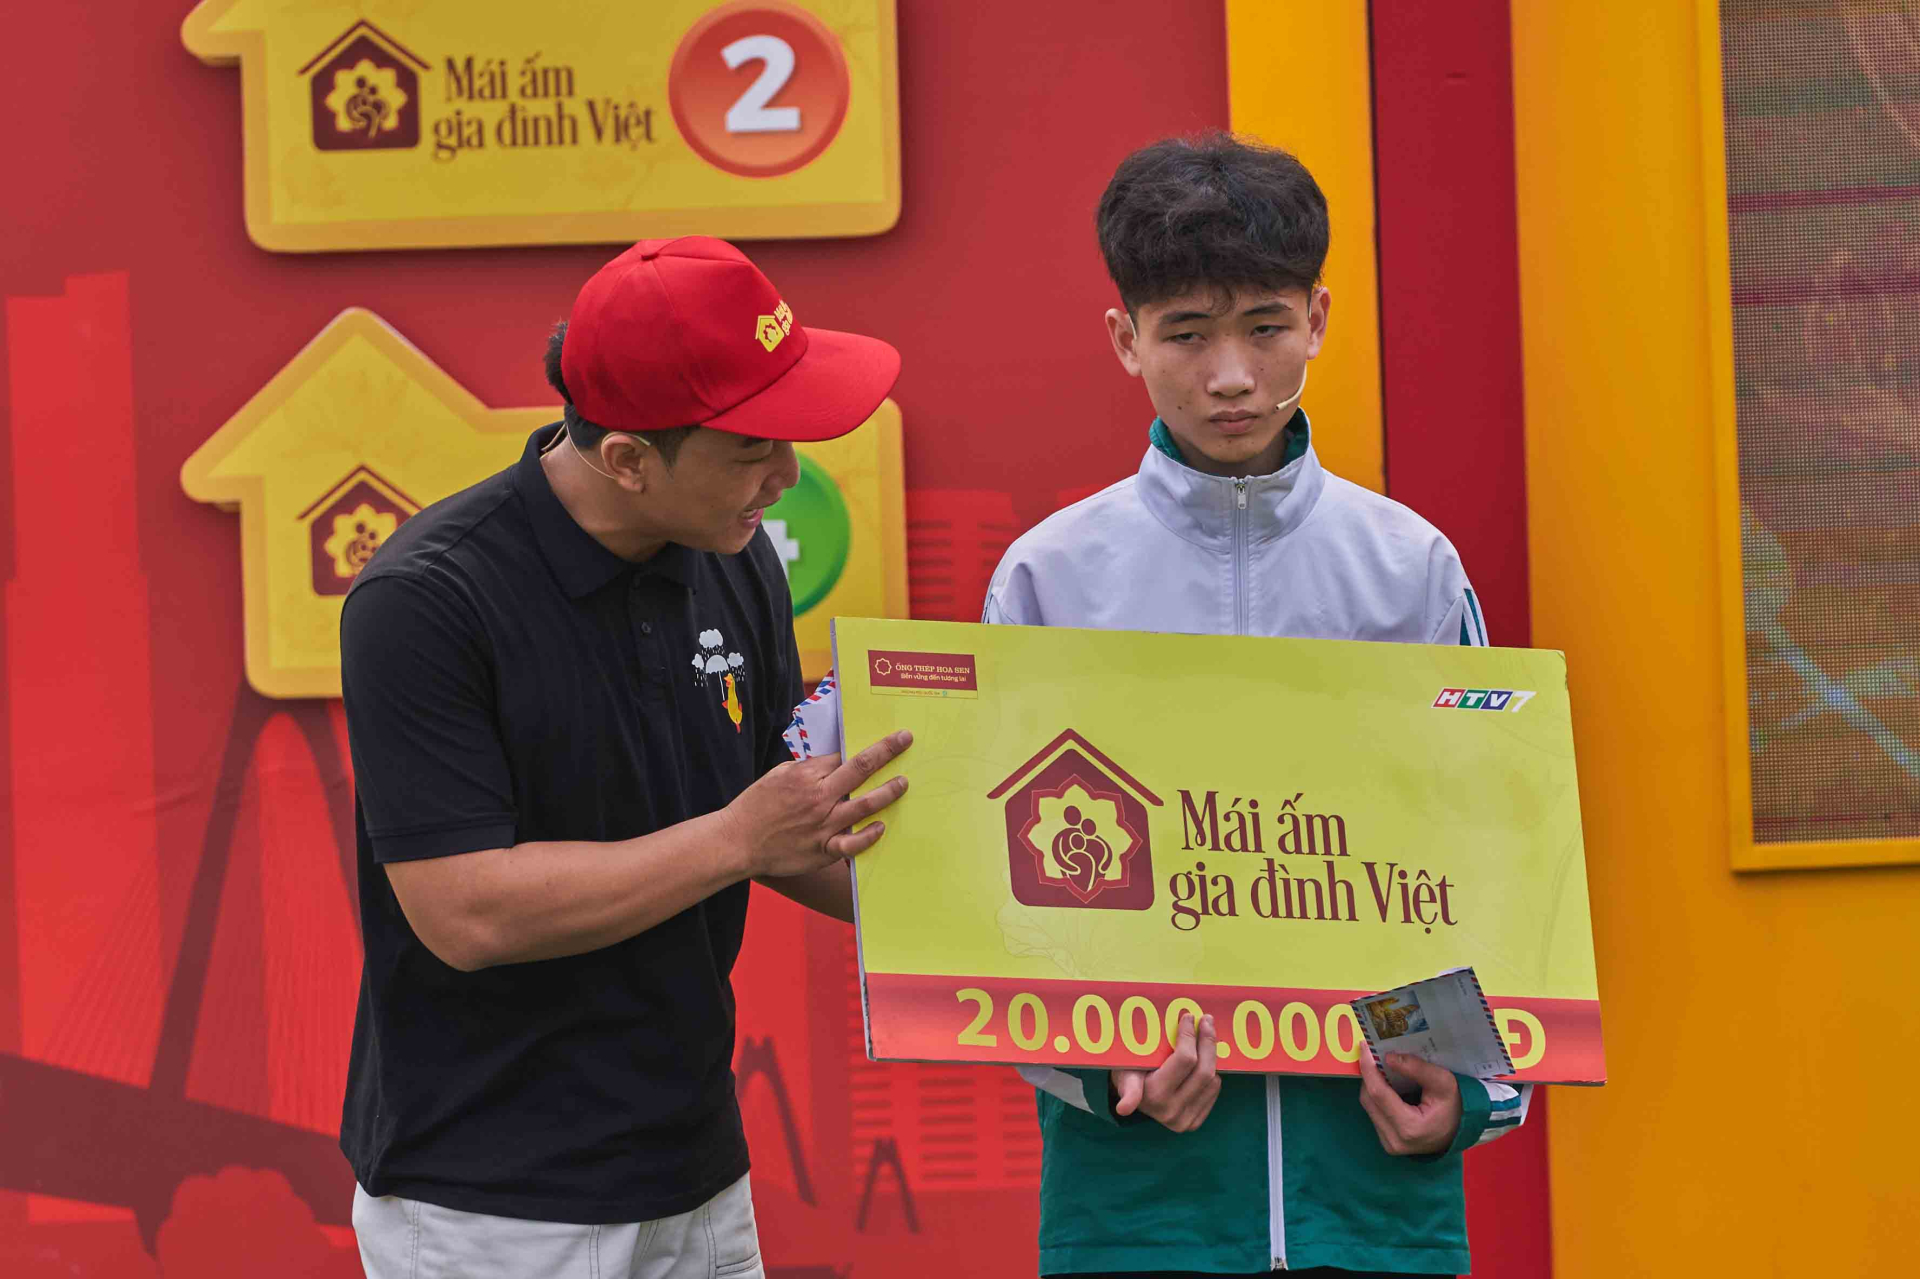 Diễn viên Đỗ Duy Nam và diễn viên Ngọc Huyền góp sức mang về giải thưởng 105 triệu cho trẻ em mồ côi - ảnh 5